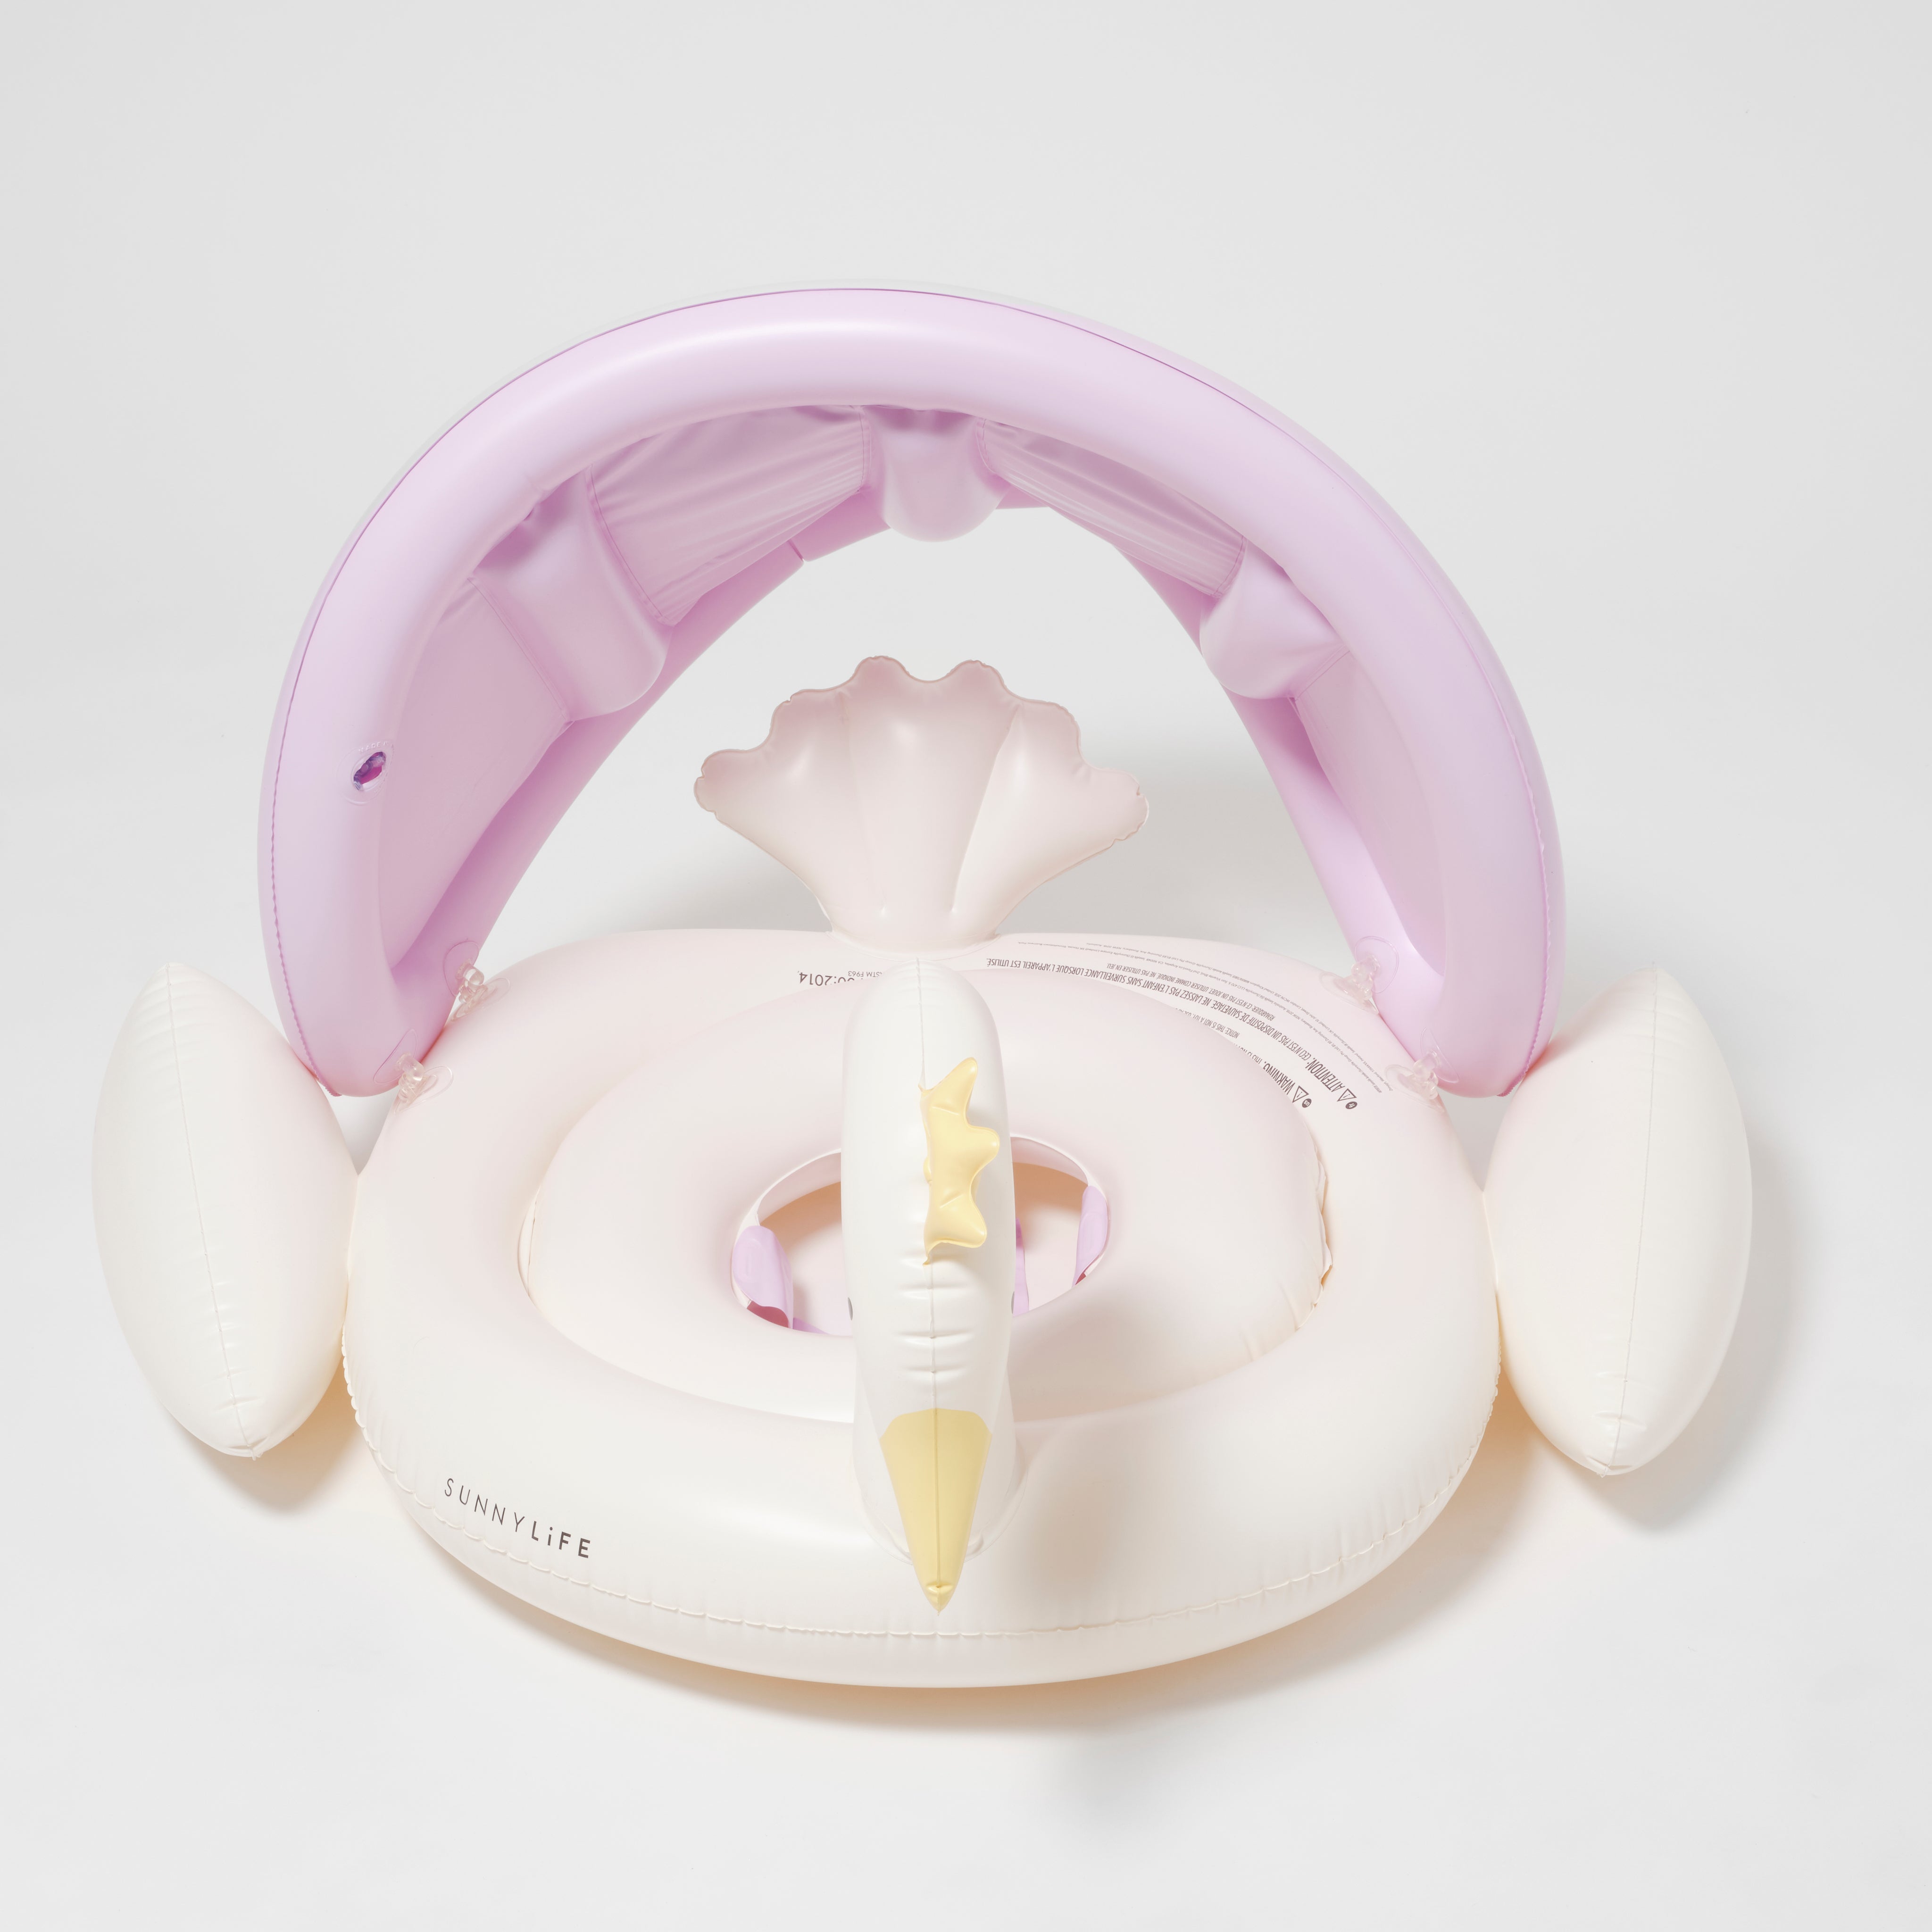 Baby Float Princess Swan Multi